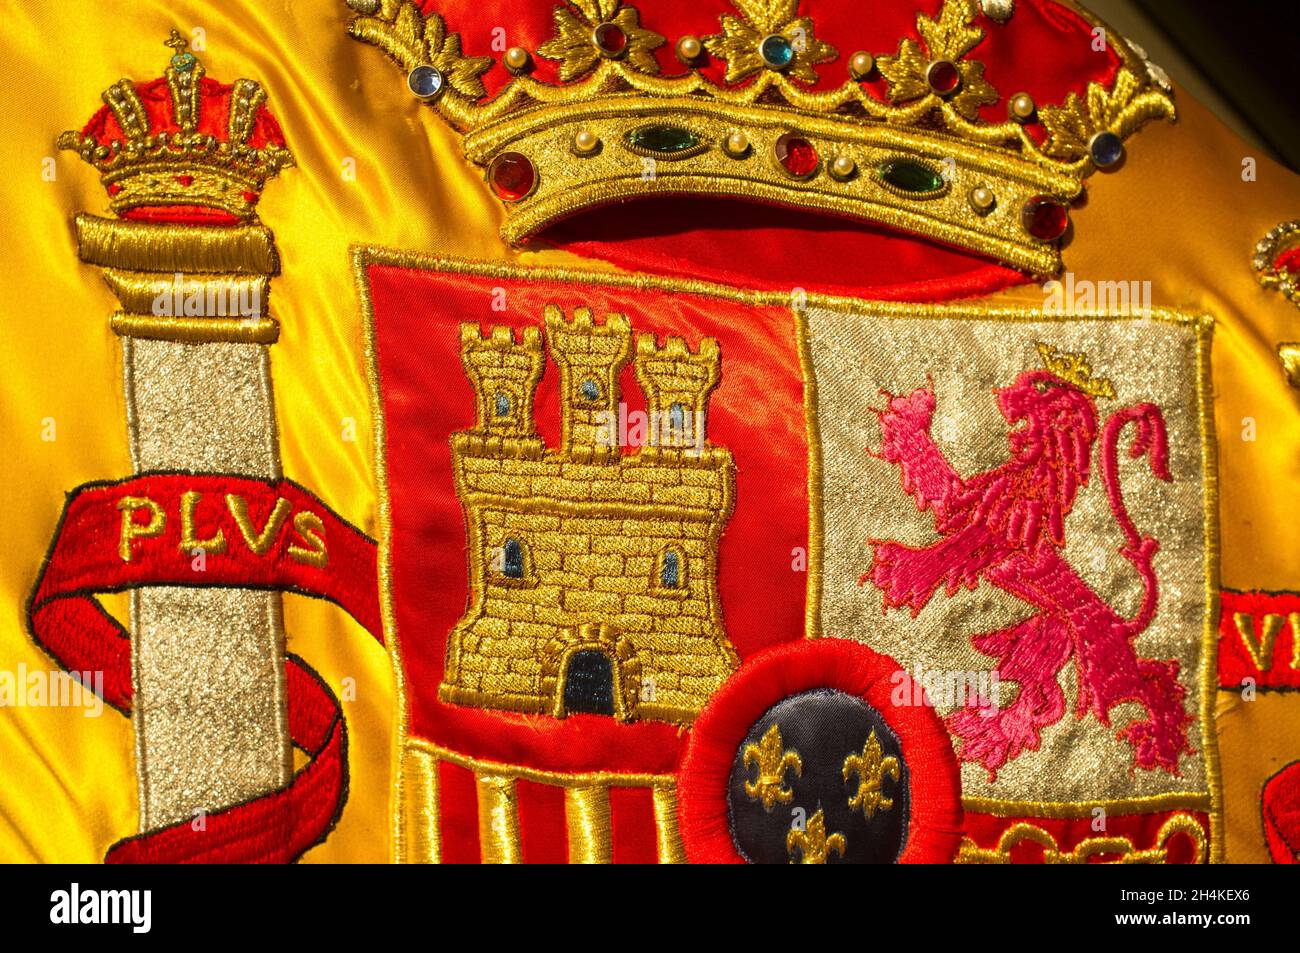 Escudo de la nación española ricamente bordado en su bandera. Primer plano. Foto de stock